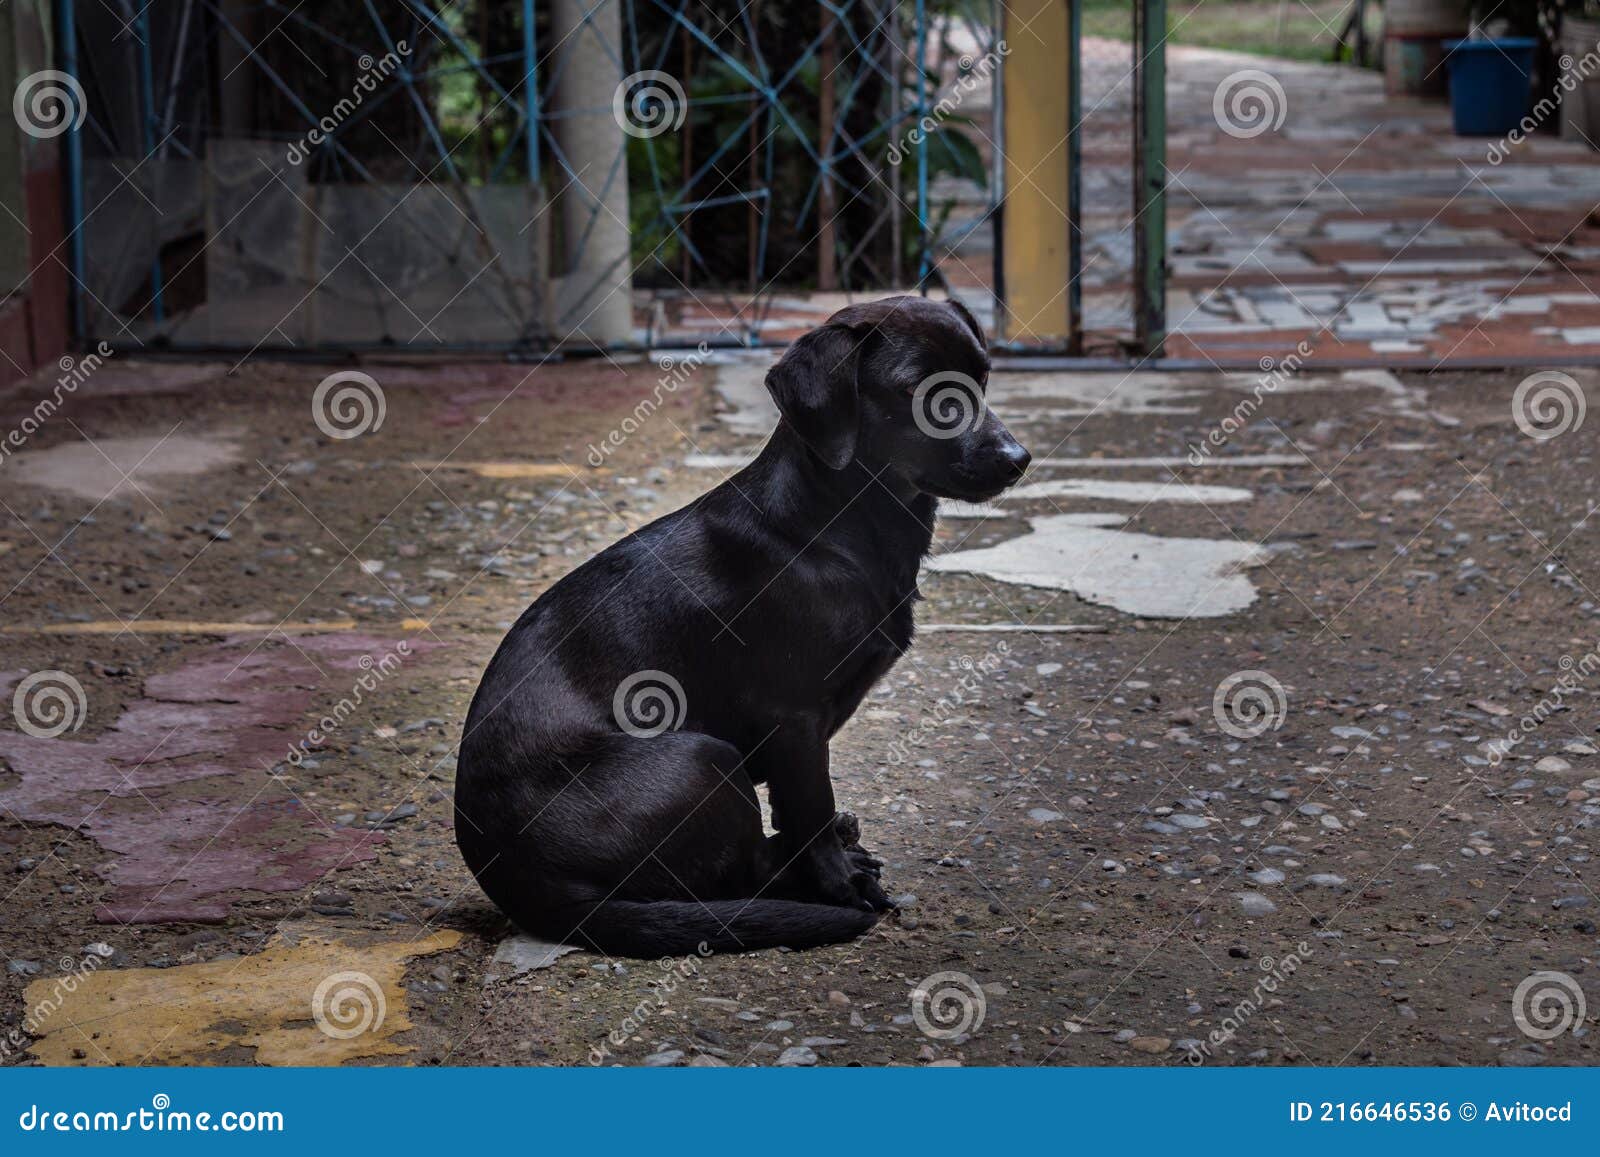 black dachshund sitting resting